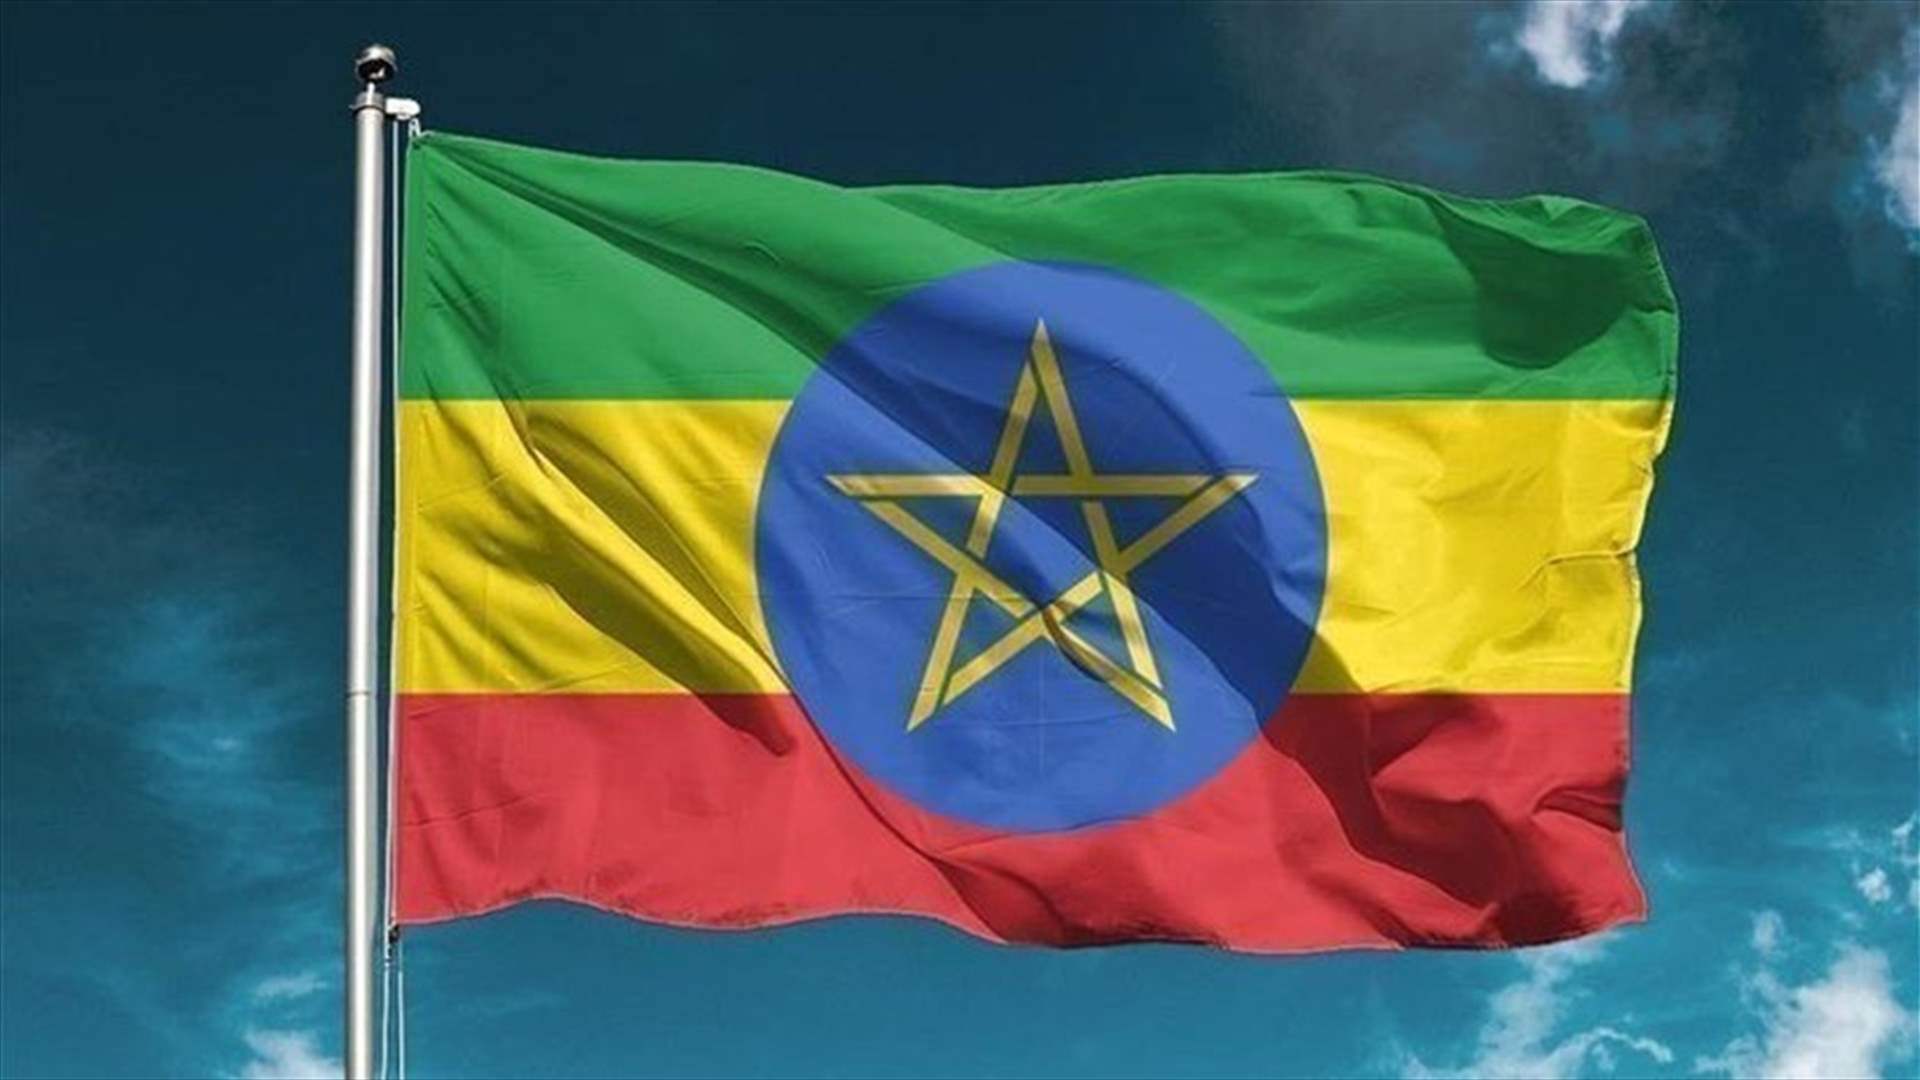 إثيوبيا تعين مسؤولا في جبهة تحرير شعب تيغراي رئيسا للحكومة الموقتة في الإقليم